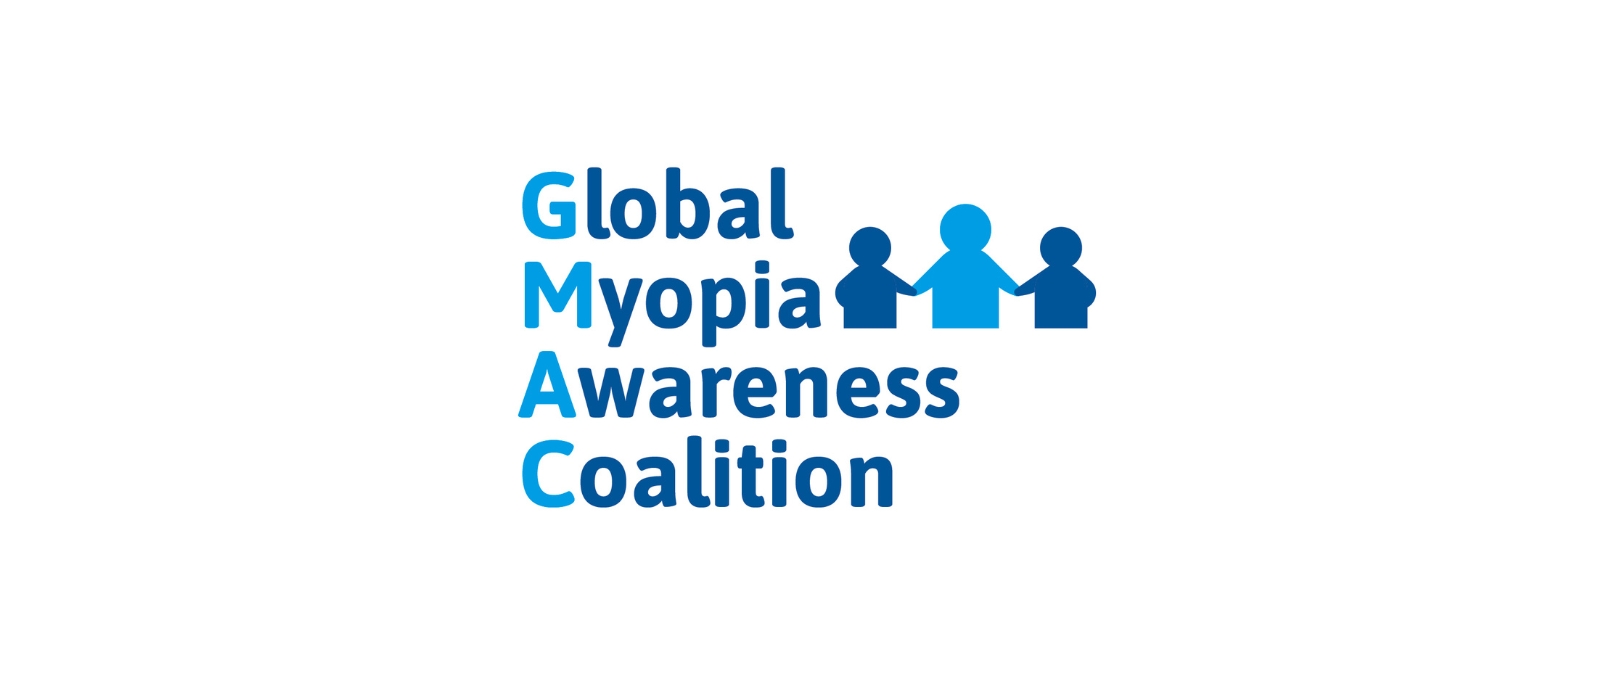 Global Myopia Awareness Coalition